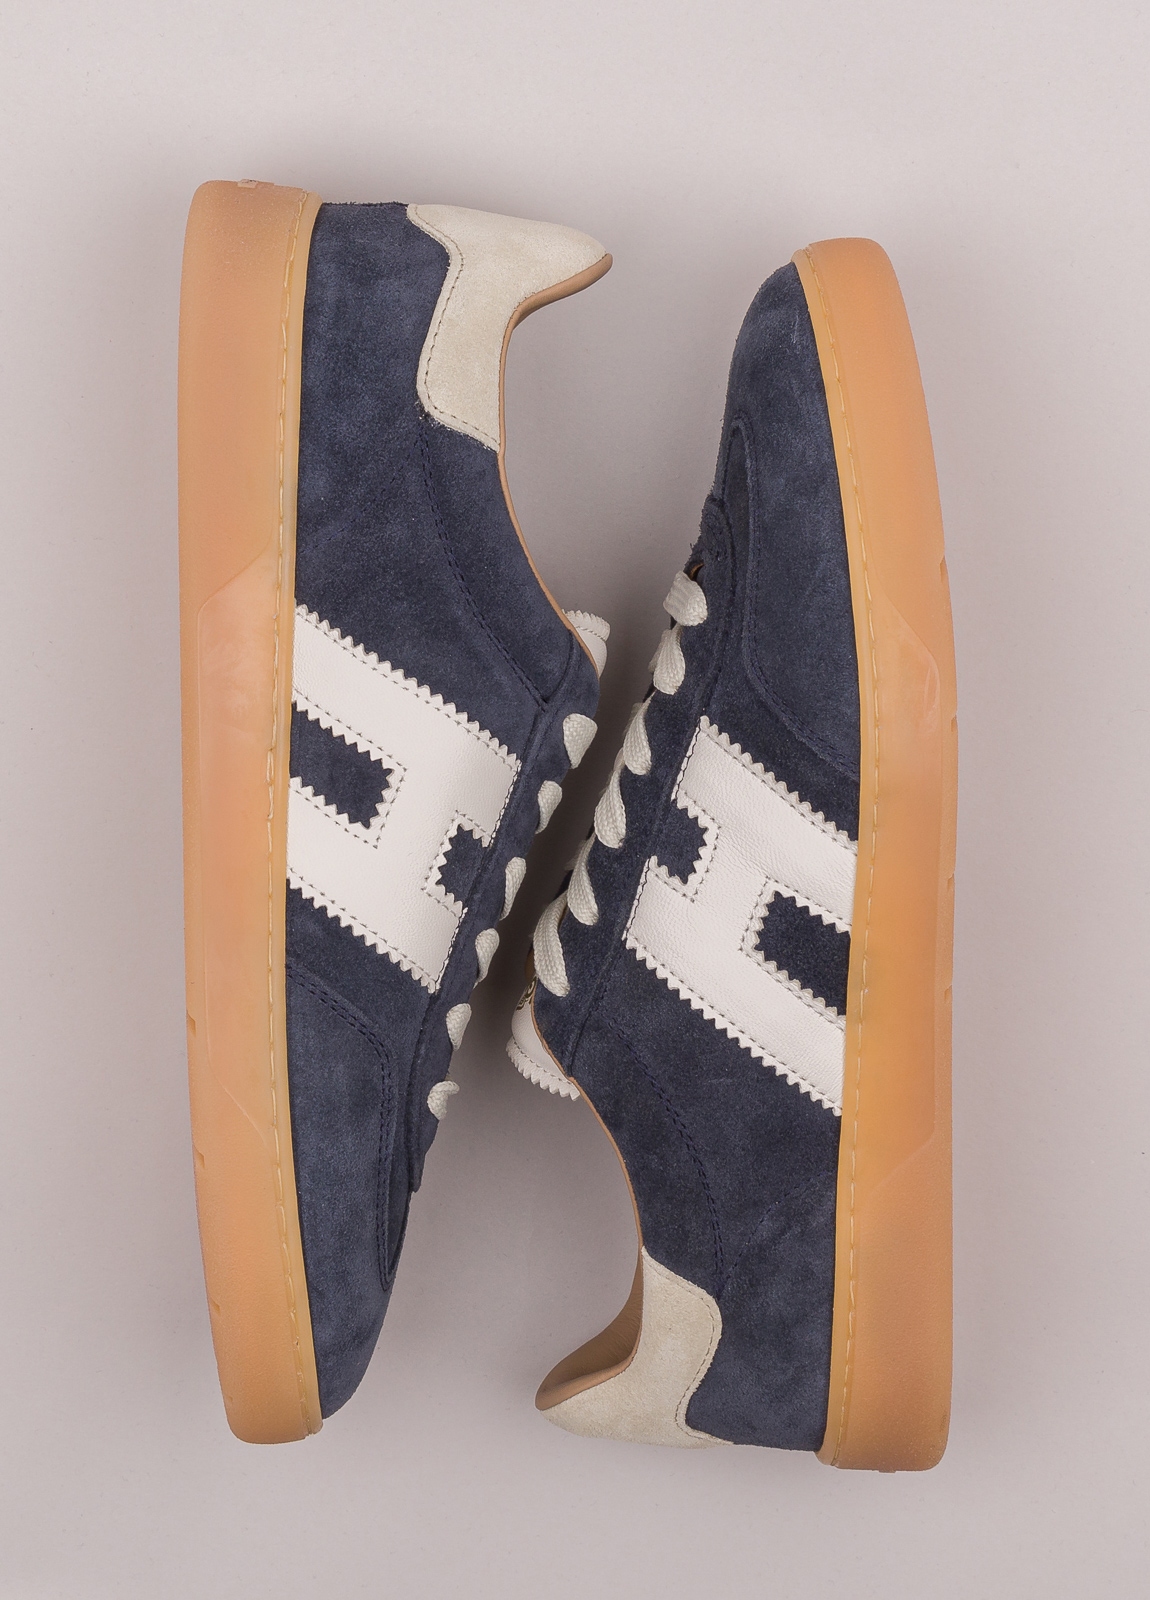 Zapatillas deportivas HOGAN color azul, blanco y beige - Ítem5